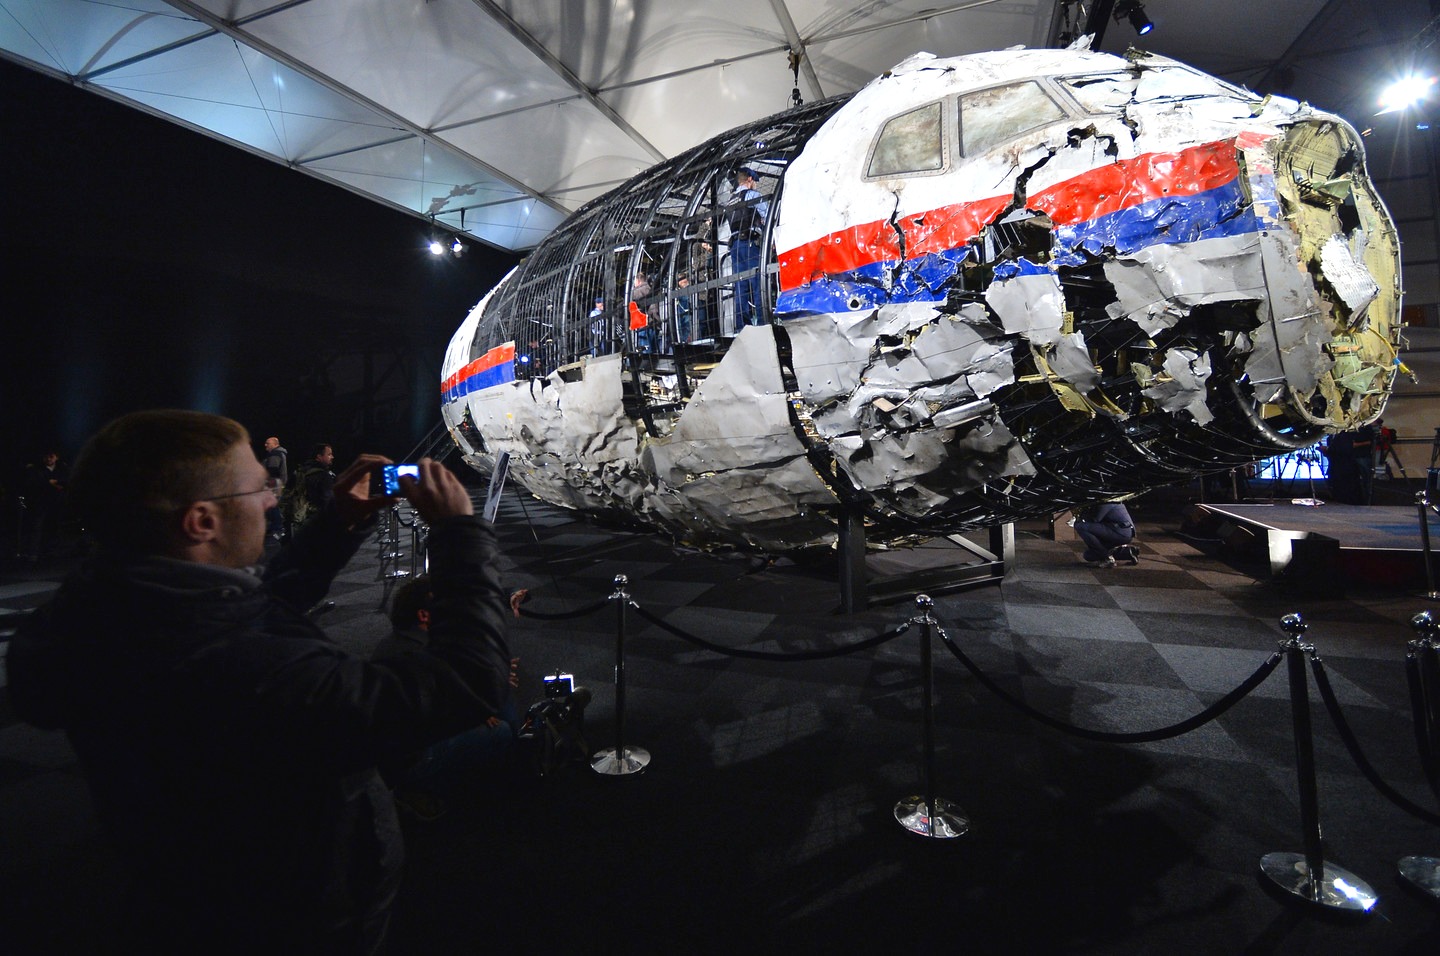 Нидерланды хотят добить Россию в деле MH17 России, Амстердам, крушении, целью, этому, Нидерланды, политический, инстанцииНо, Западу, репутации, очернение, направленный, исключительно, Обращение, деньги, интересуют, рассматривают, другие, совсем, случаях